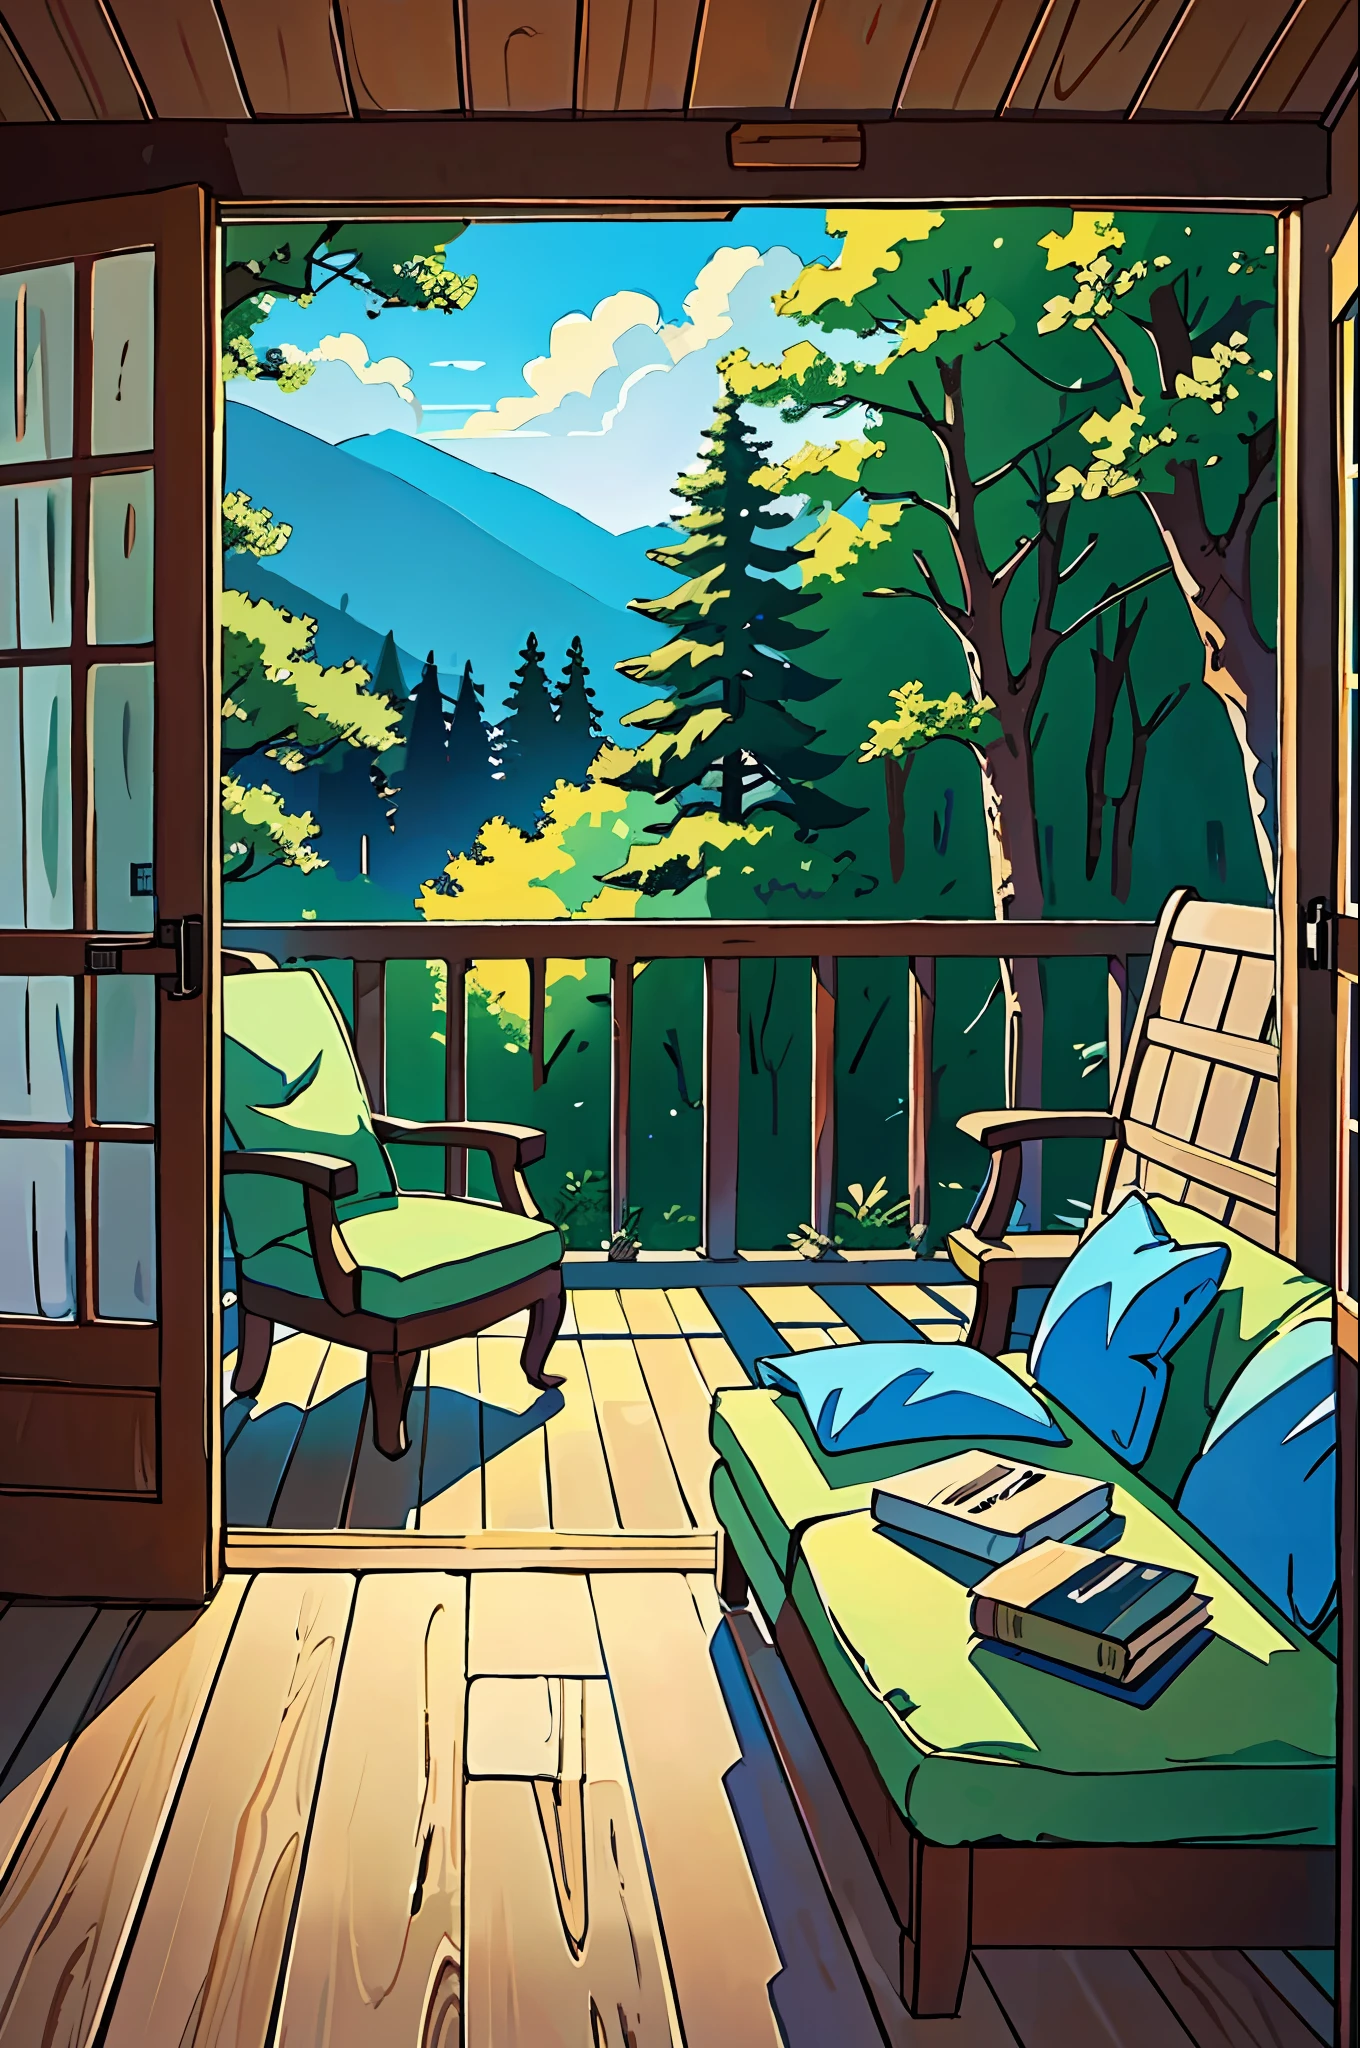 (melhor qualidade:0.8), (melhor qualidade:0.8), ilustração de anime perfeita, interior de uma casa linda e aconchegante na floresta